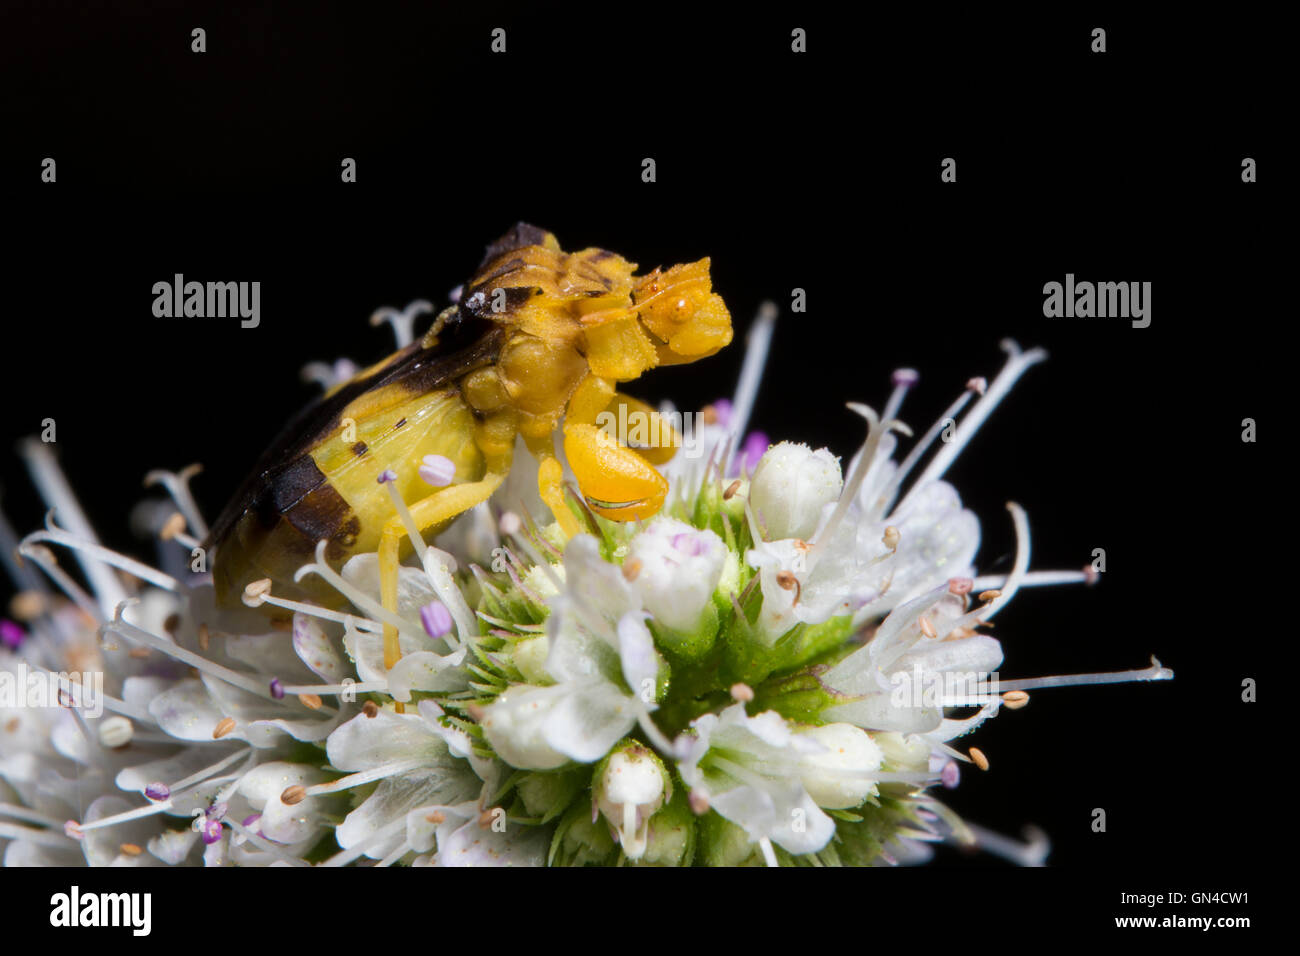 Jagged Ambush Bugs (Phymata erosa) Stock Photo